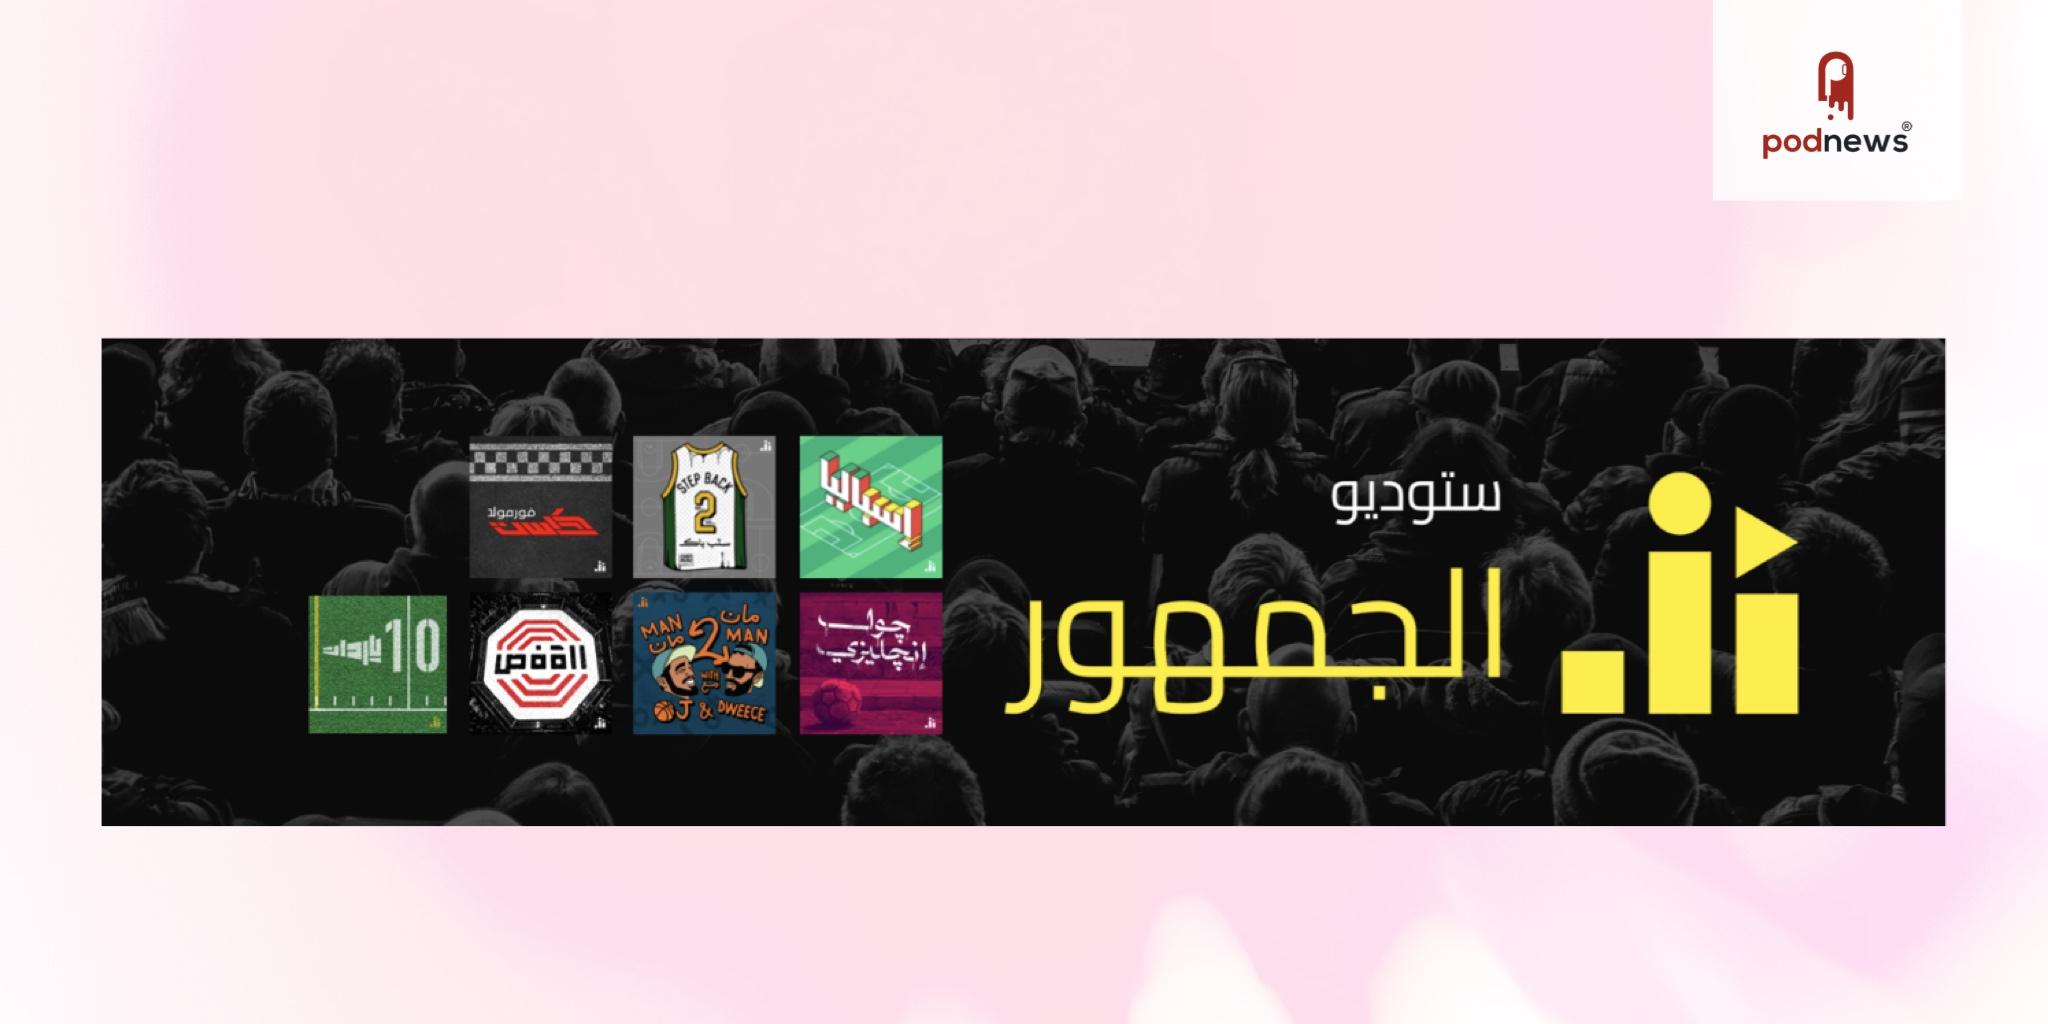 ستوديو الجمهور، أول شبكة بودكاست رياضية عربية، يطلق مجموعة من البرامج الرياضية